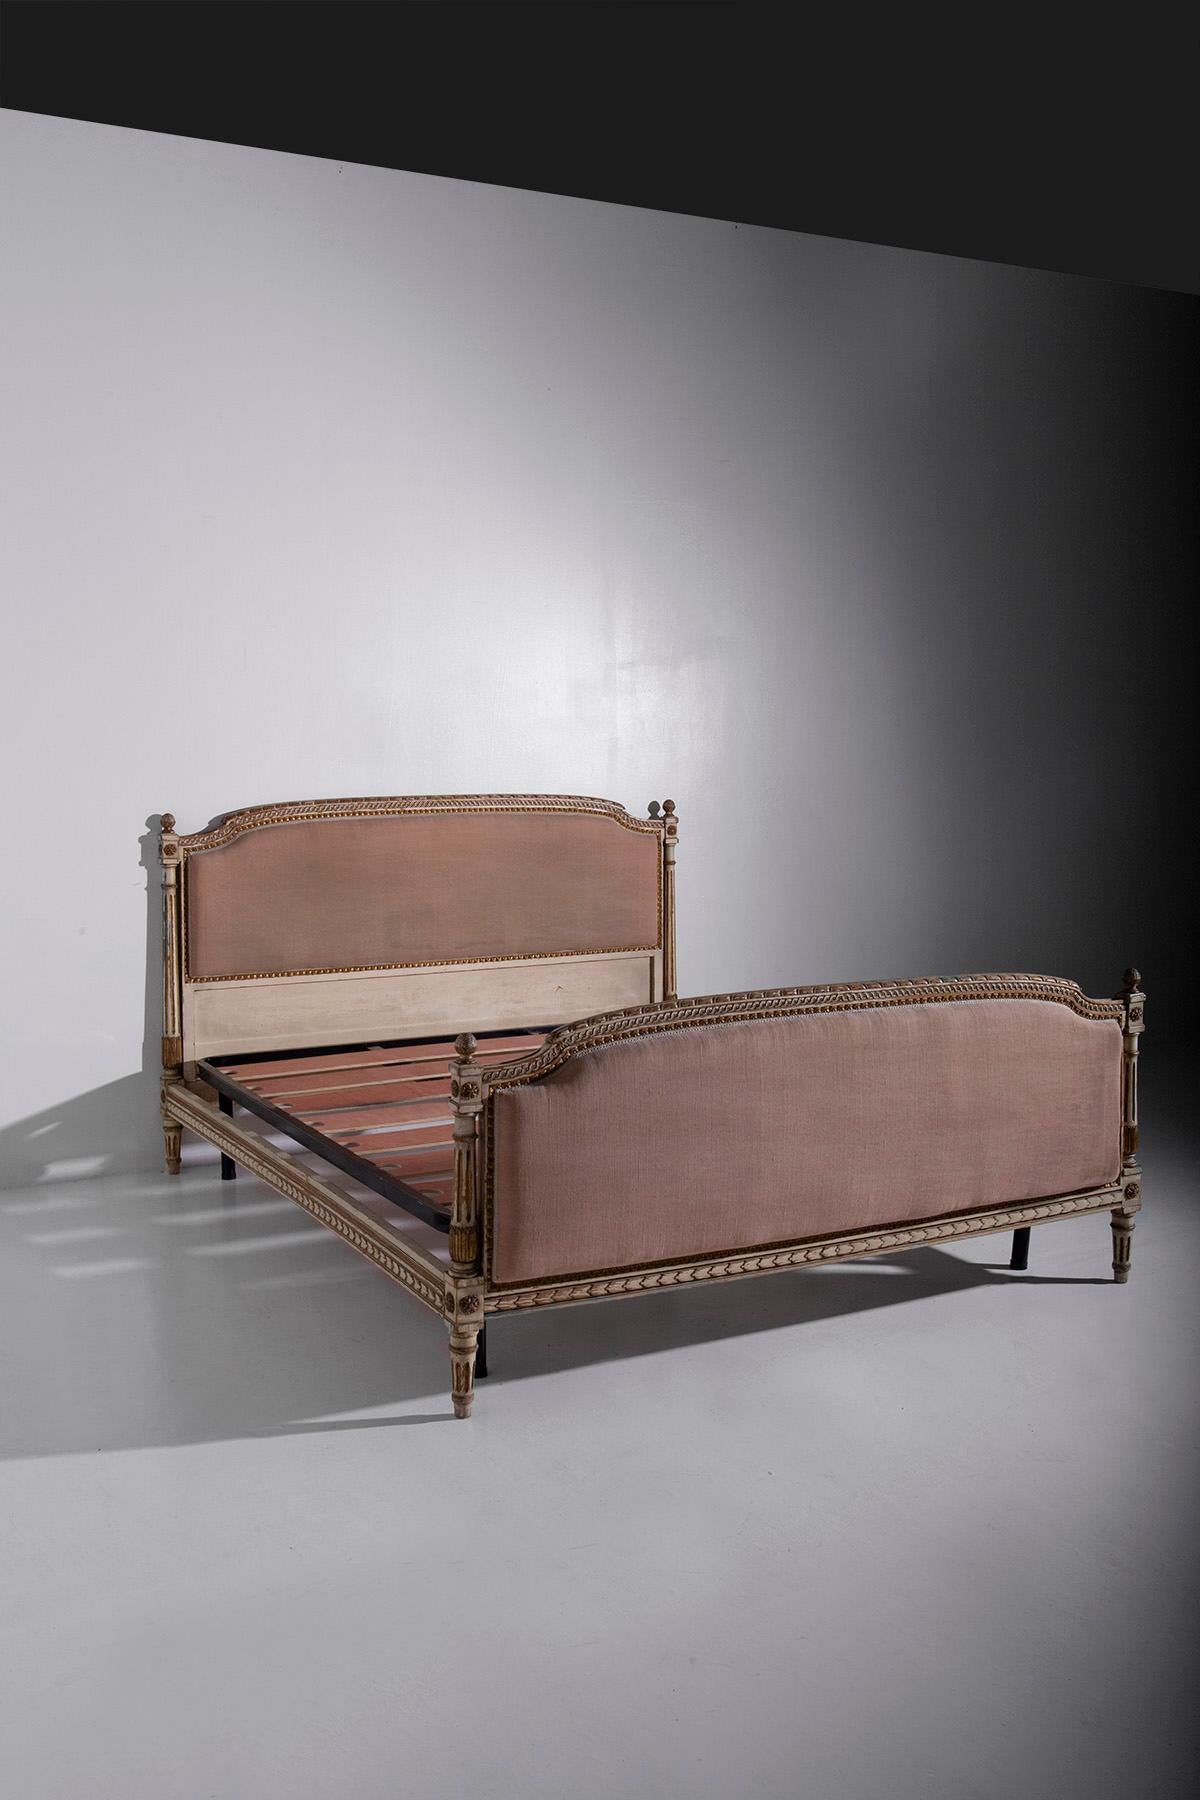 Au cœur d'une chambre à coucher française classique, où le temps semble s'être arrêté et où l'élégance règne en maître, se trouve un chef-d'œuvre d'artisanat : un lit en bois doré d'une beauté et d'une grâce inégalées, dans le style du XVIIIe